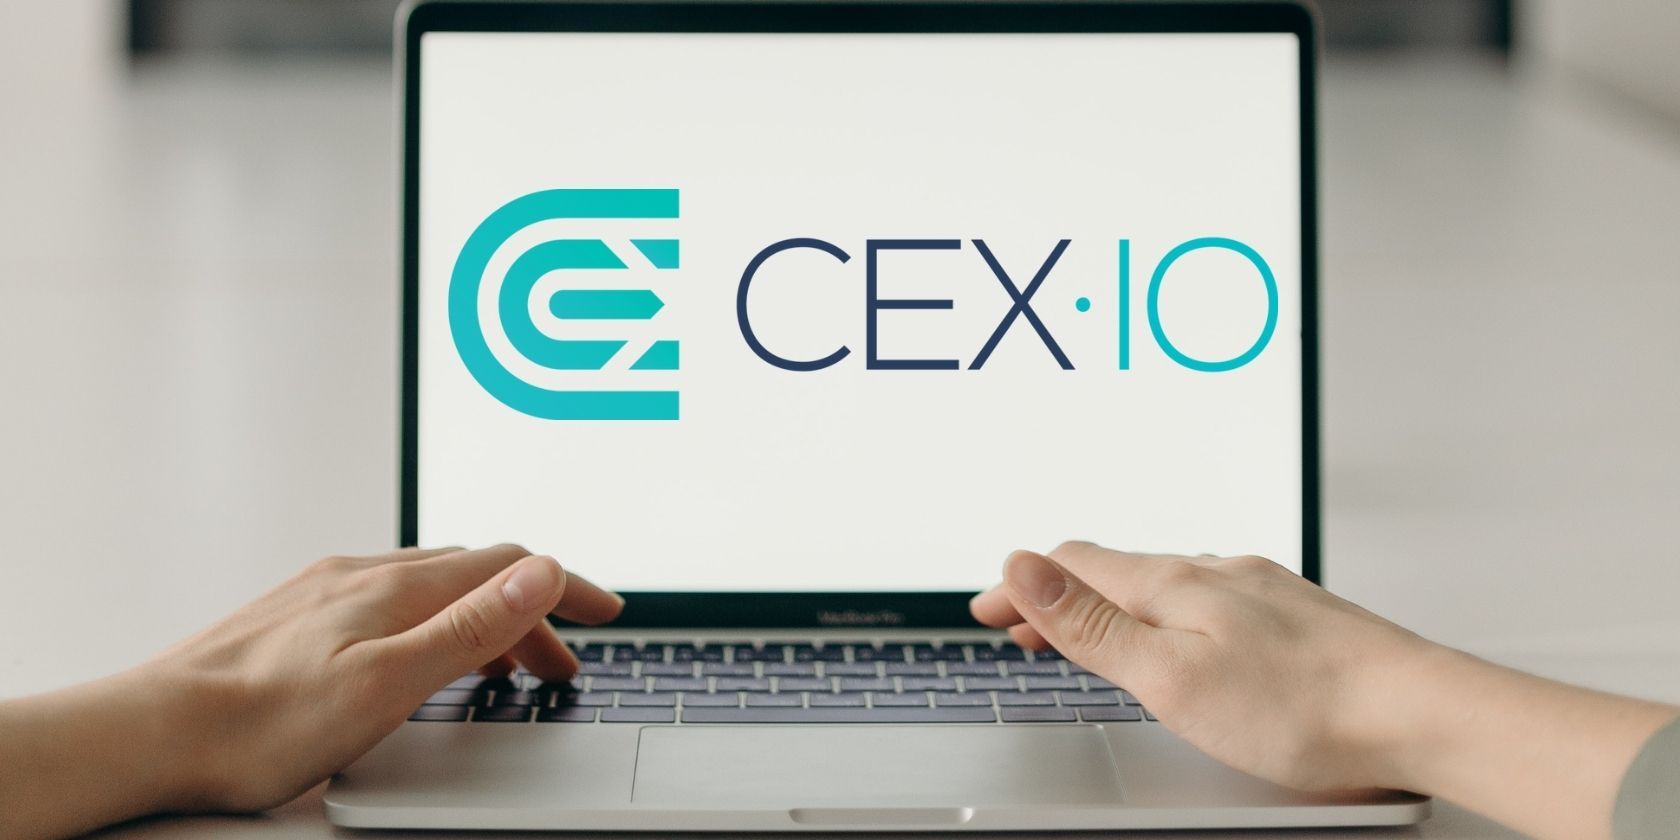 cex.io logo on laptop screen